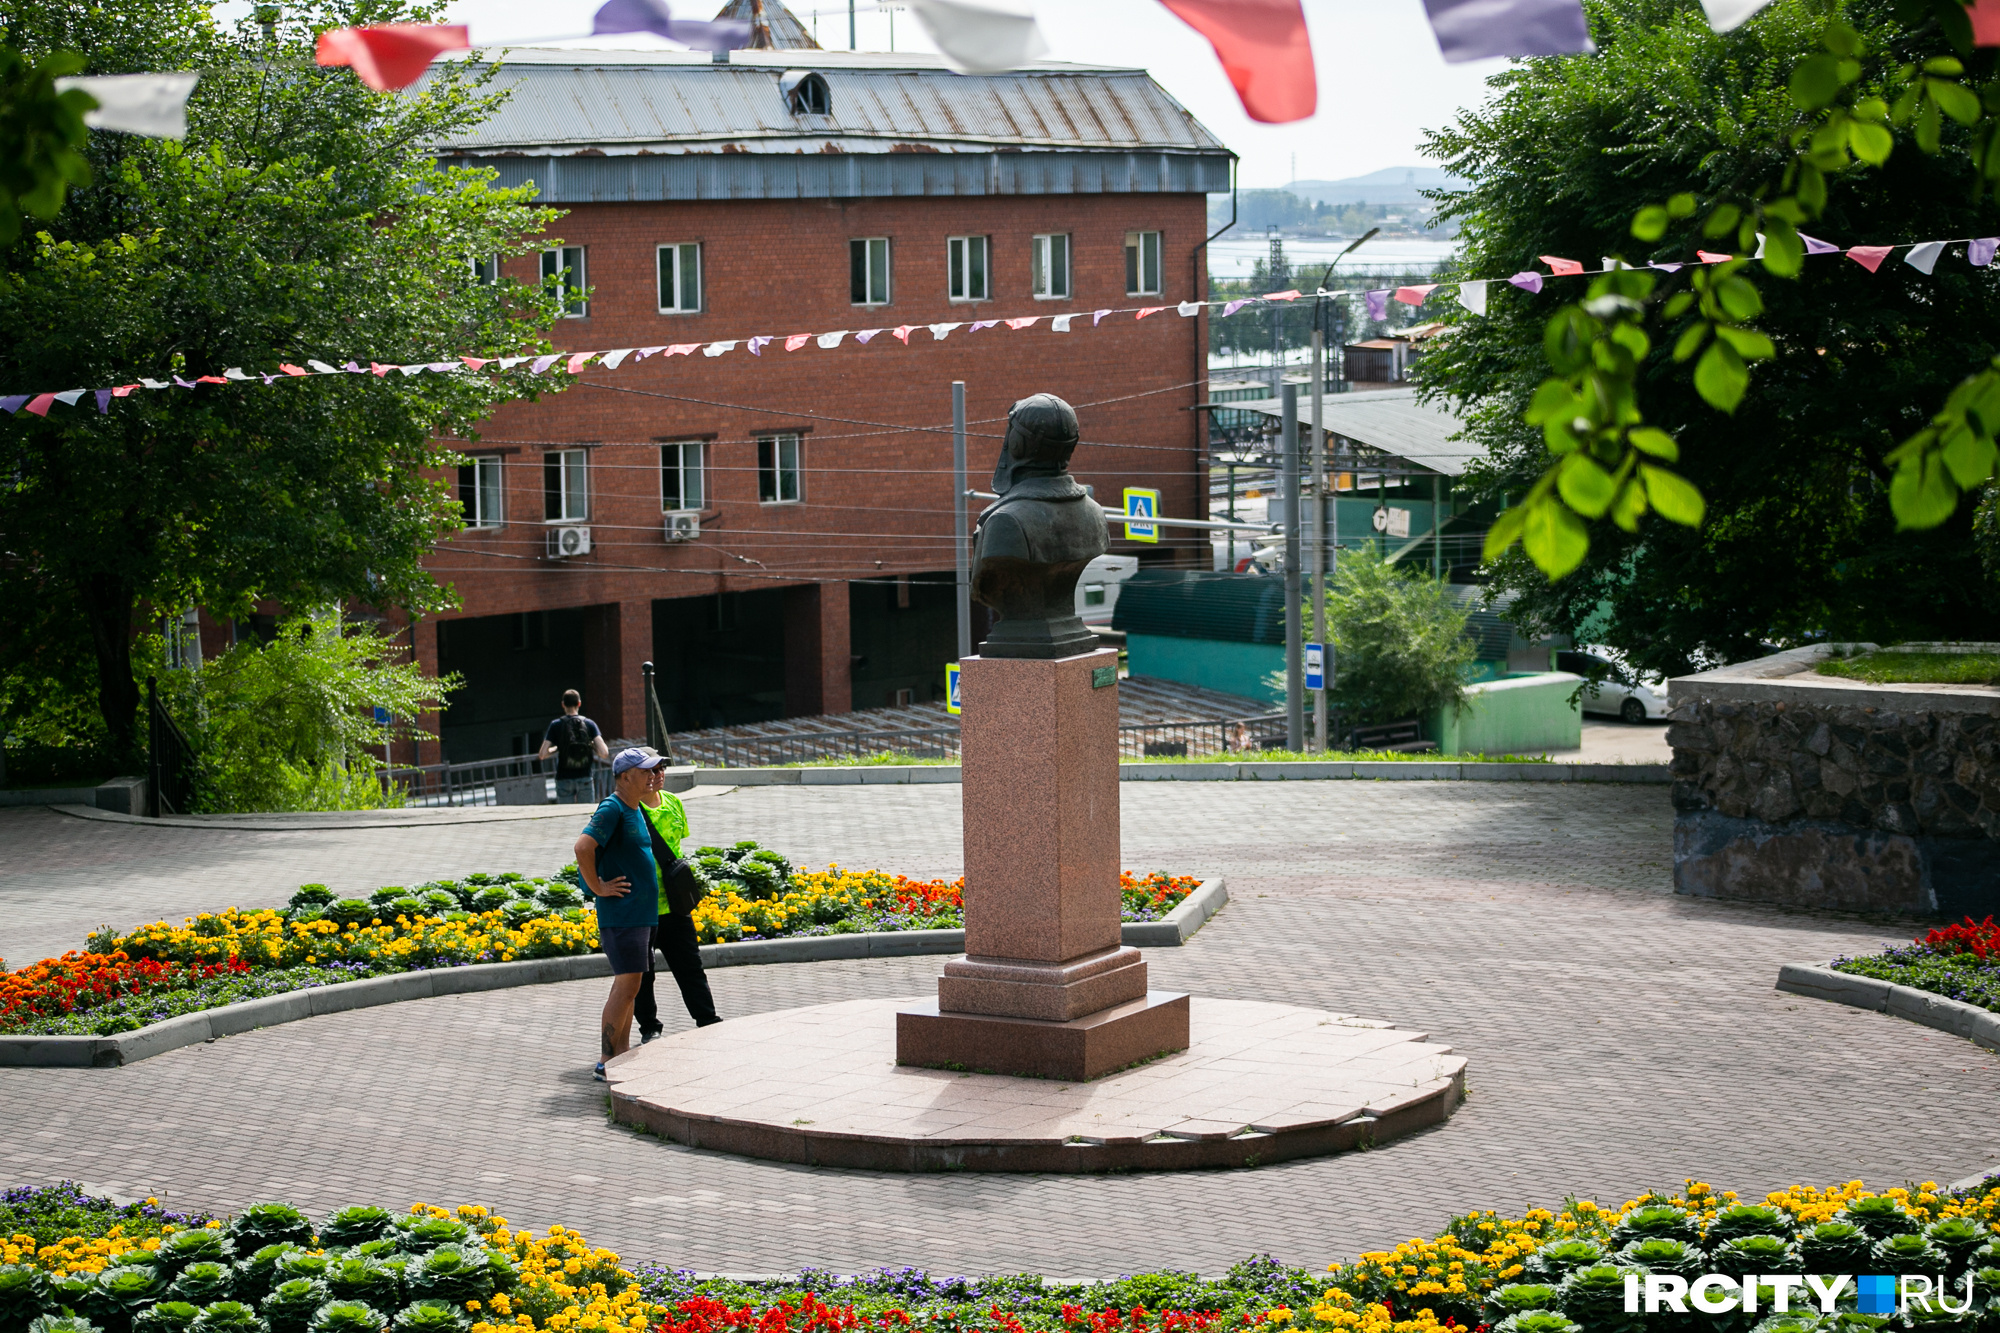 Это сквер с памятником летчика Николая Челнокова, установленным в 2016 году